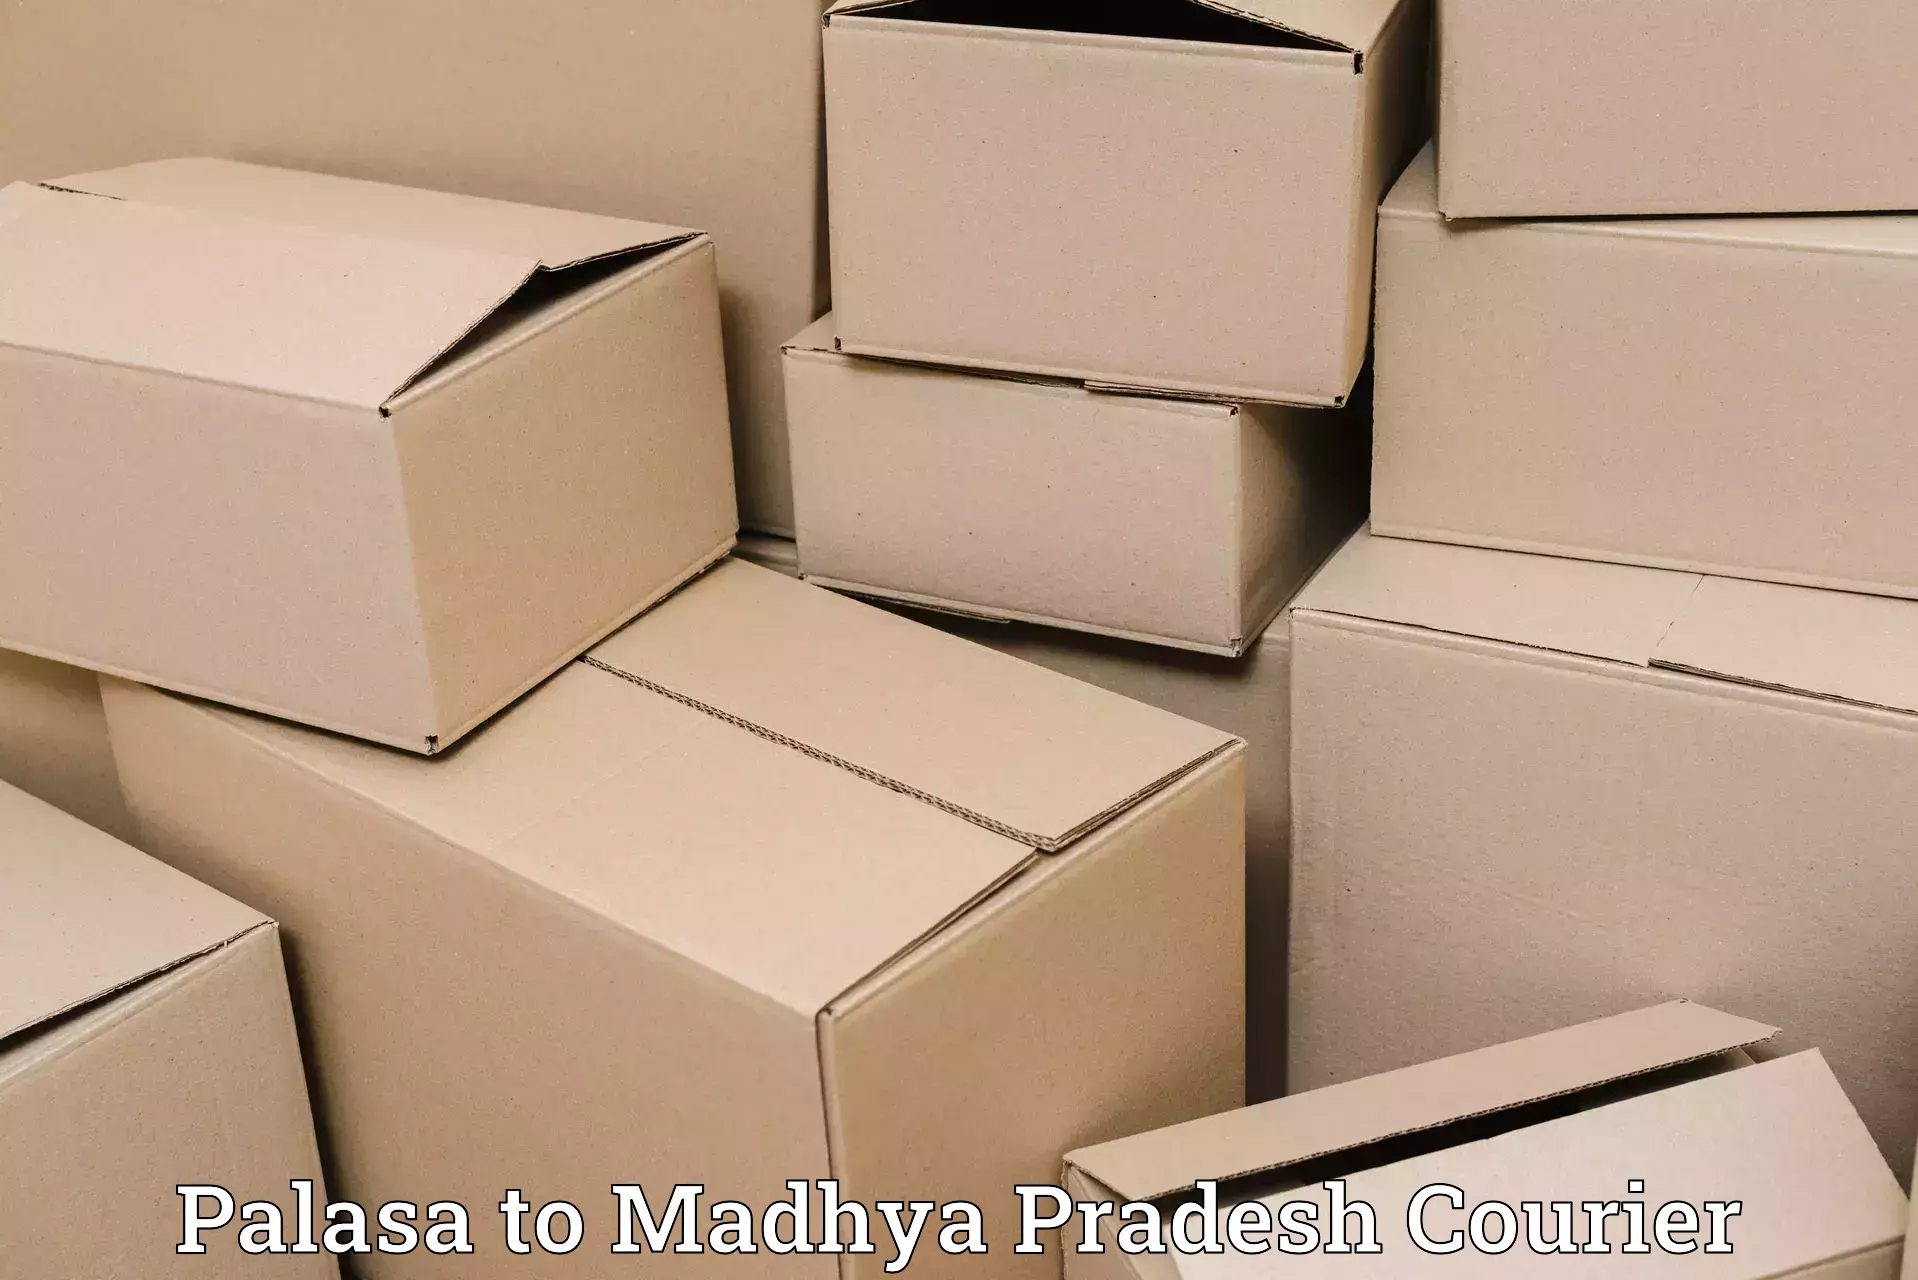 International parcel service Palasa to Gadarwara